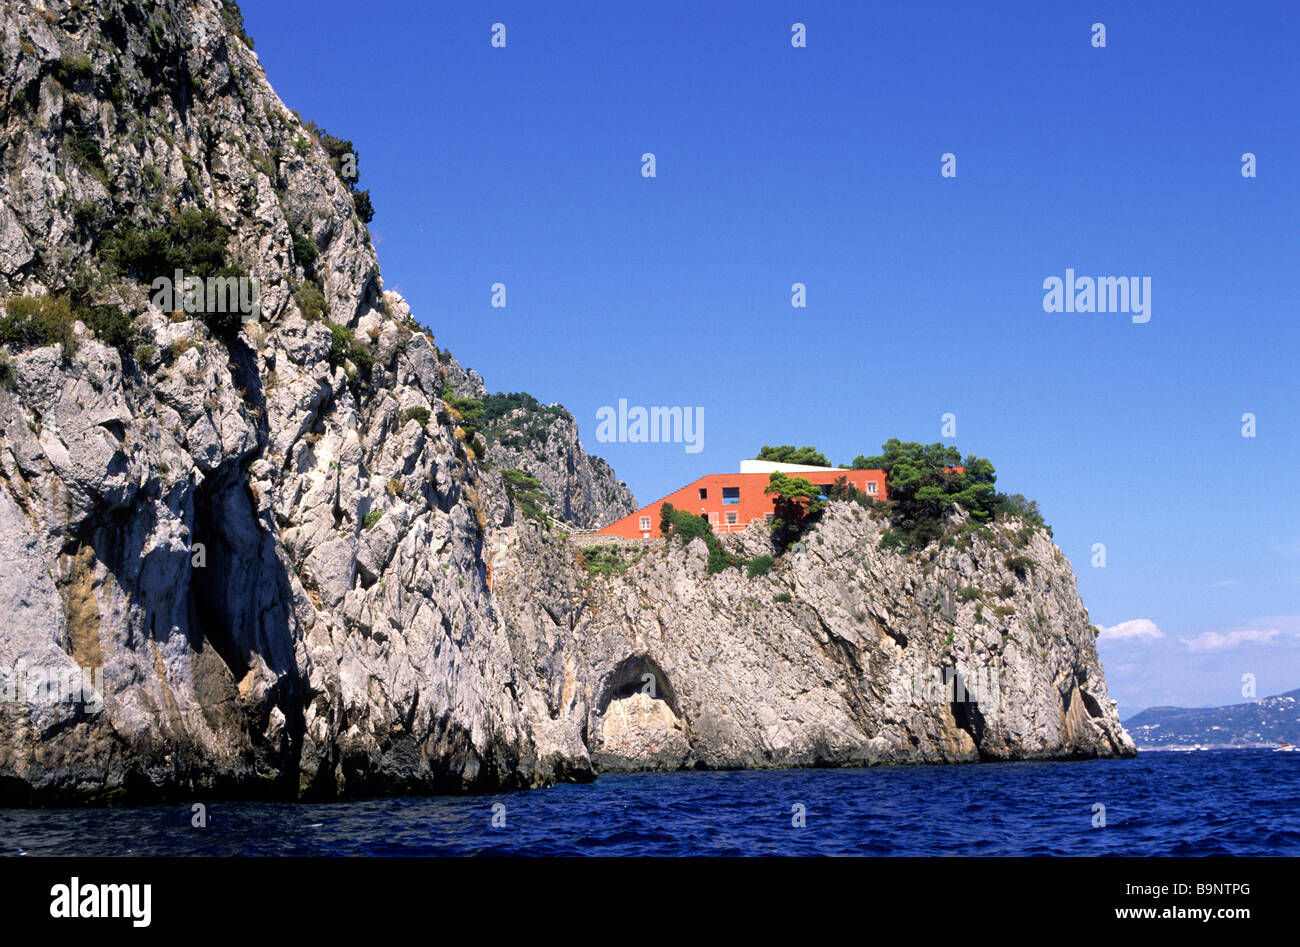 Italy, Campania, Capri Island, Villa Malaparte (1937) by architect Adalberto Libera for the Italian writer Curzio Malaparte Stock Photo